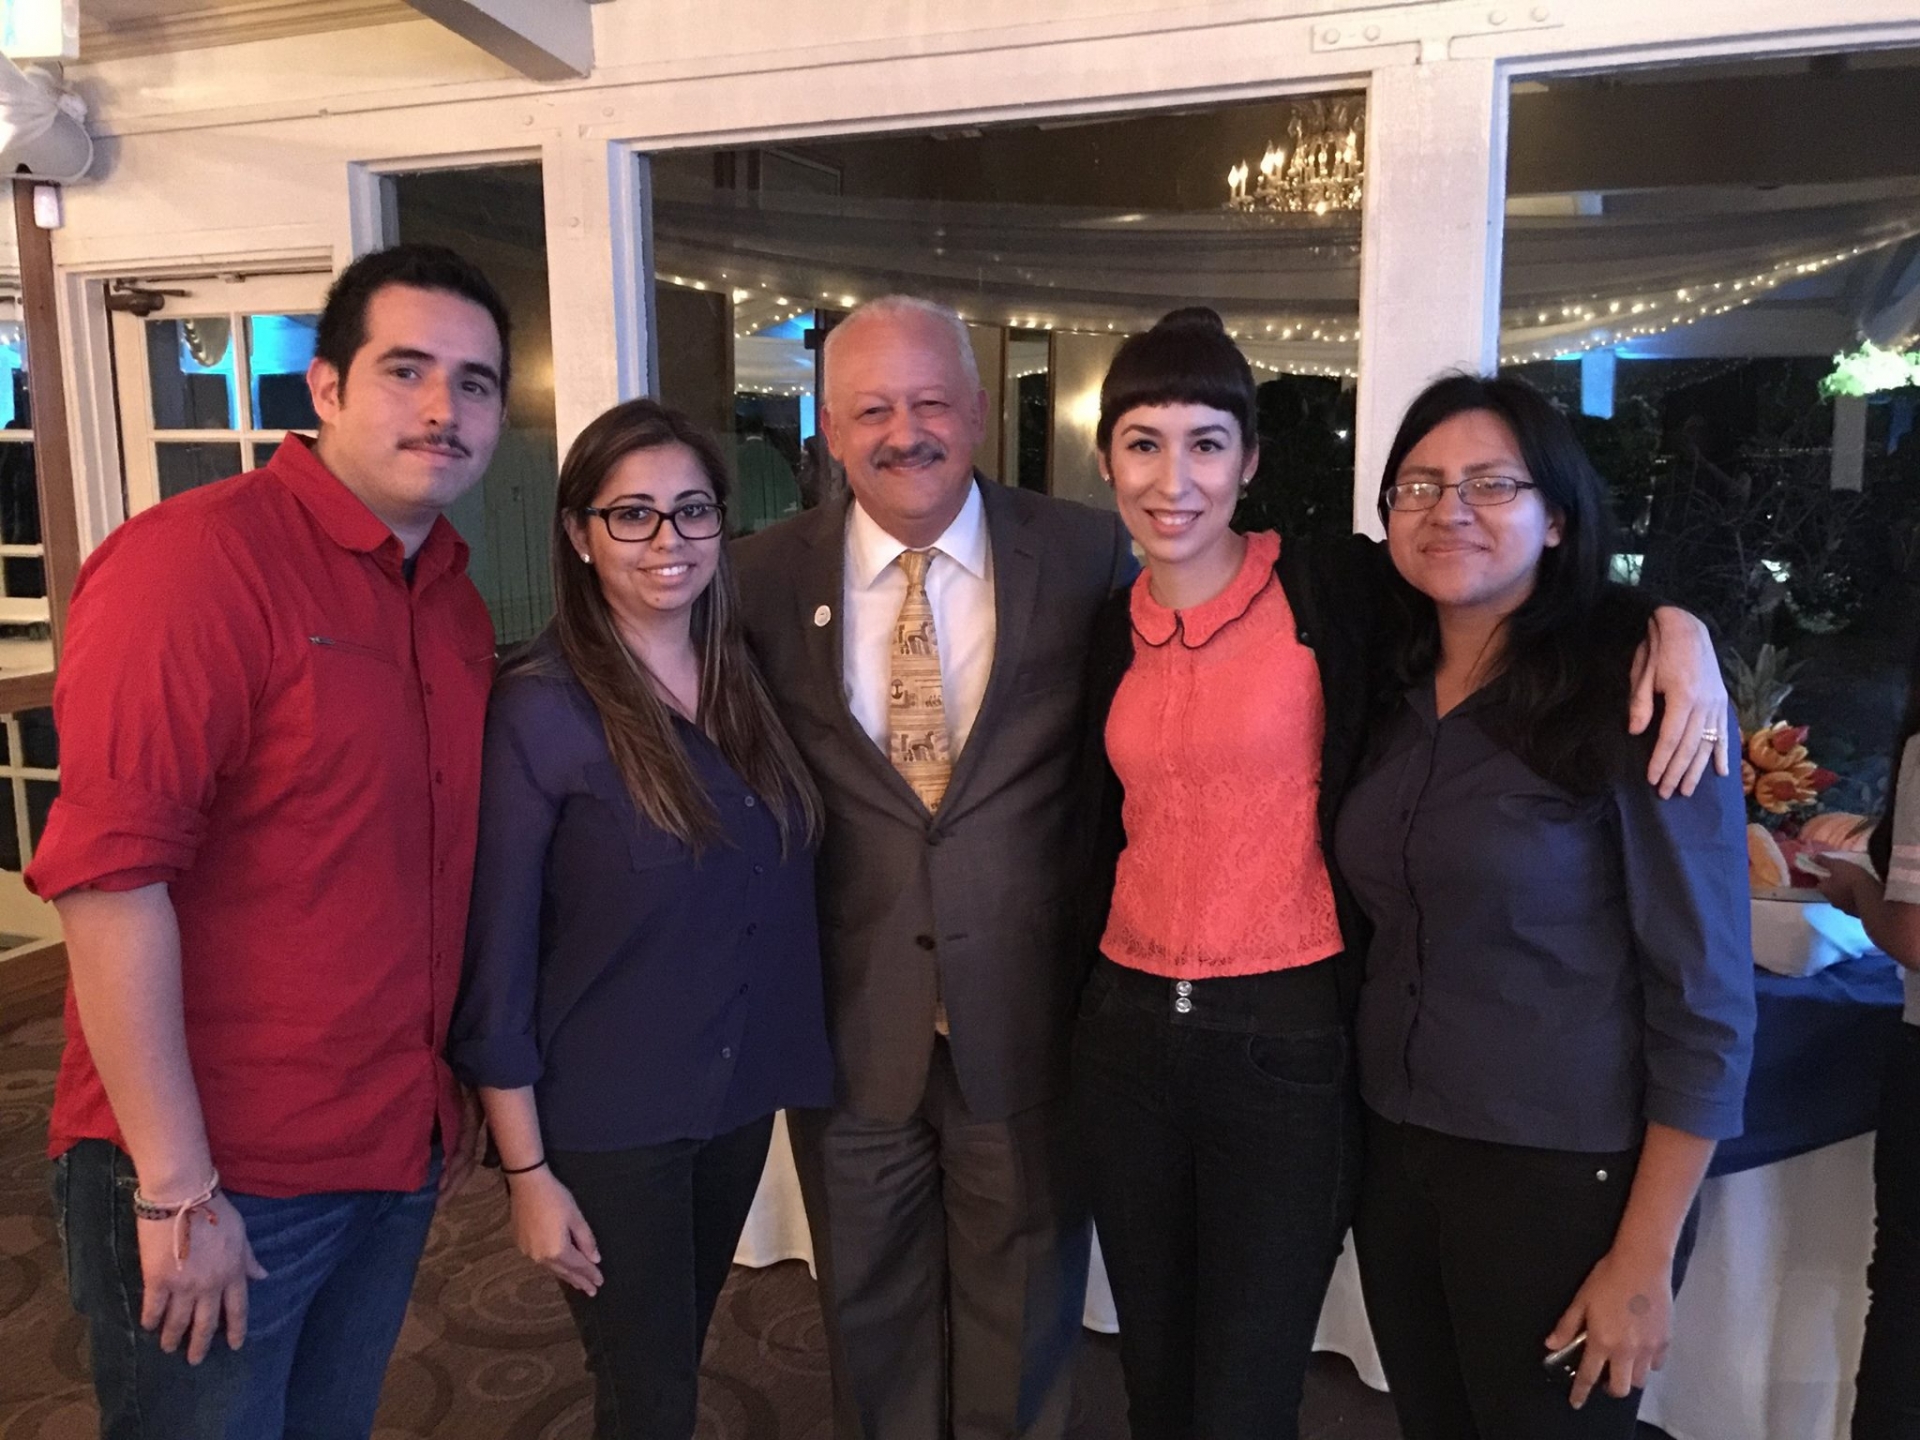 Los Amigos Members with Dr. Morales